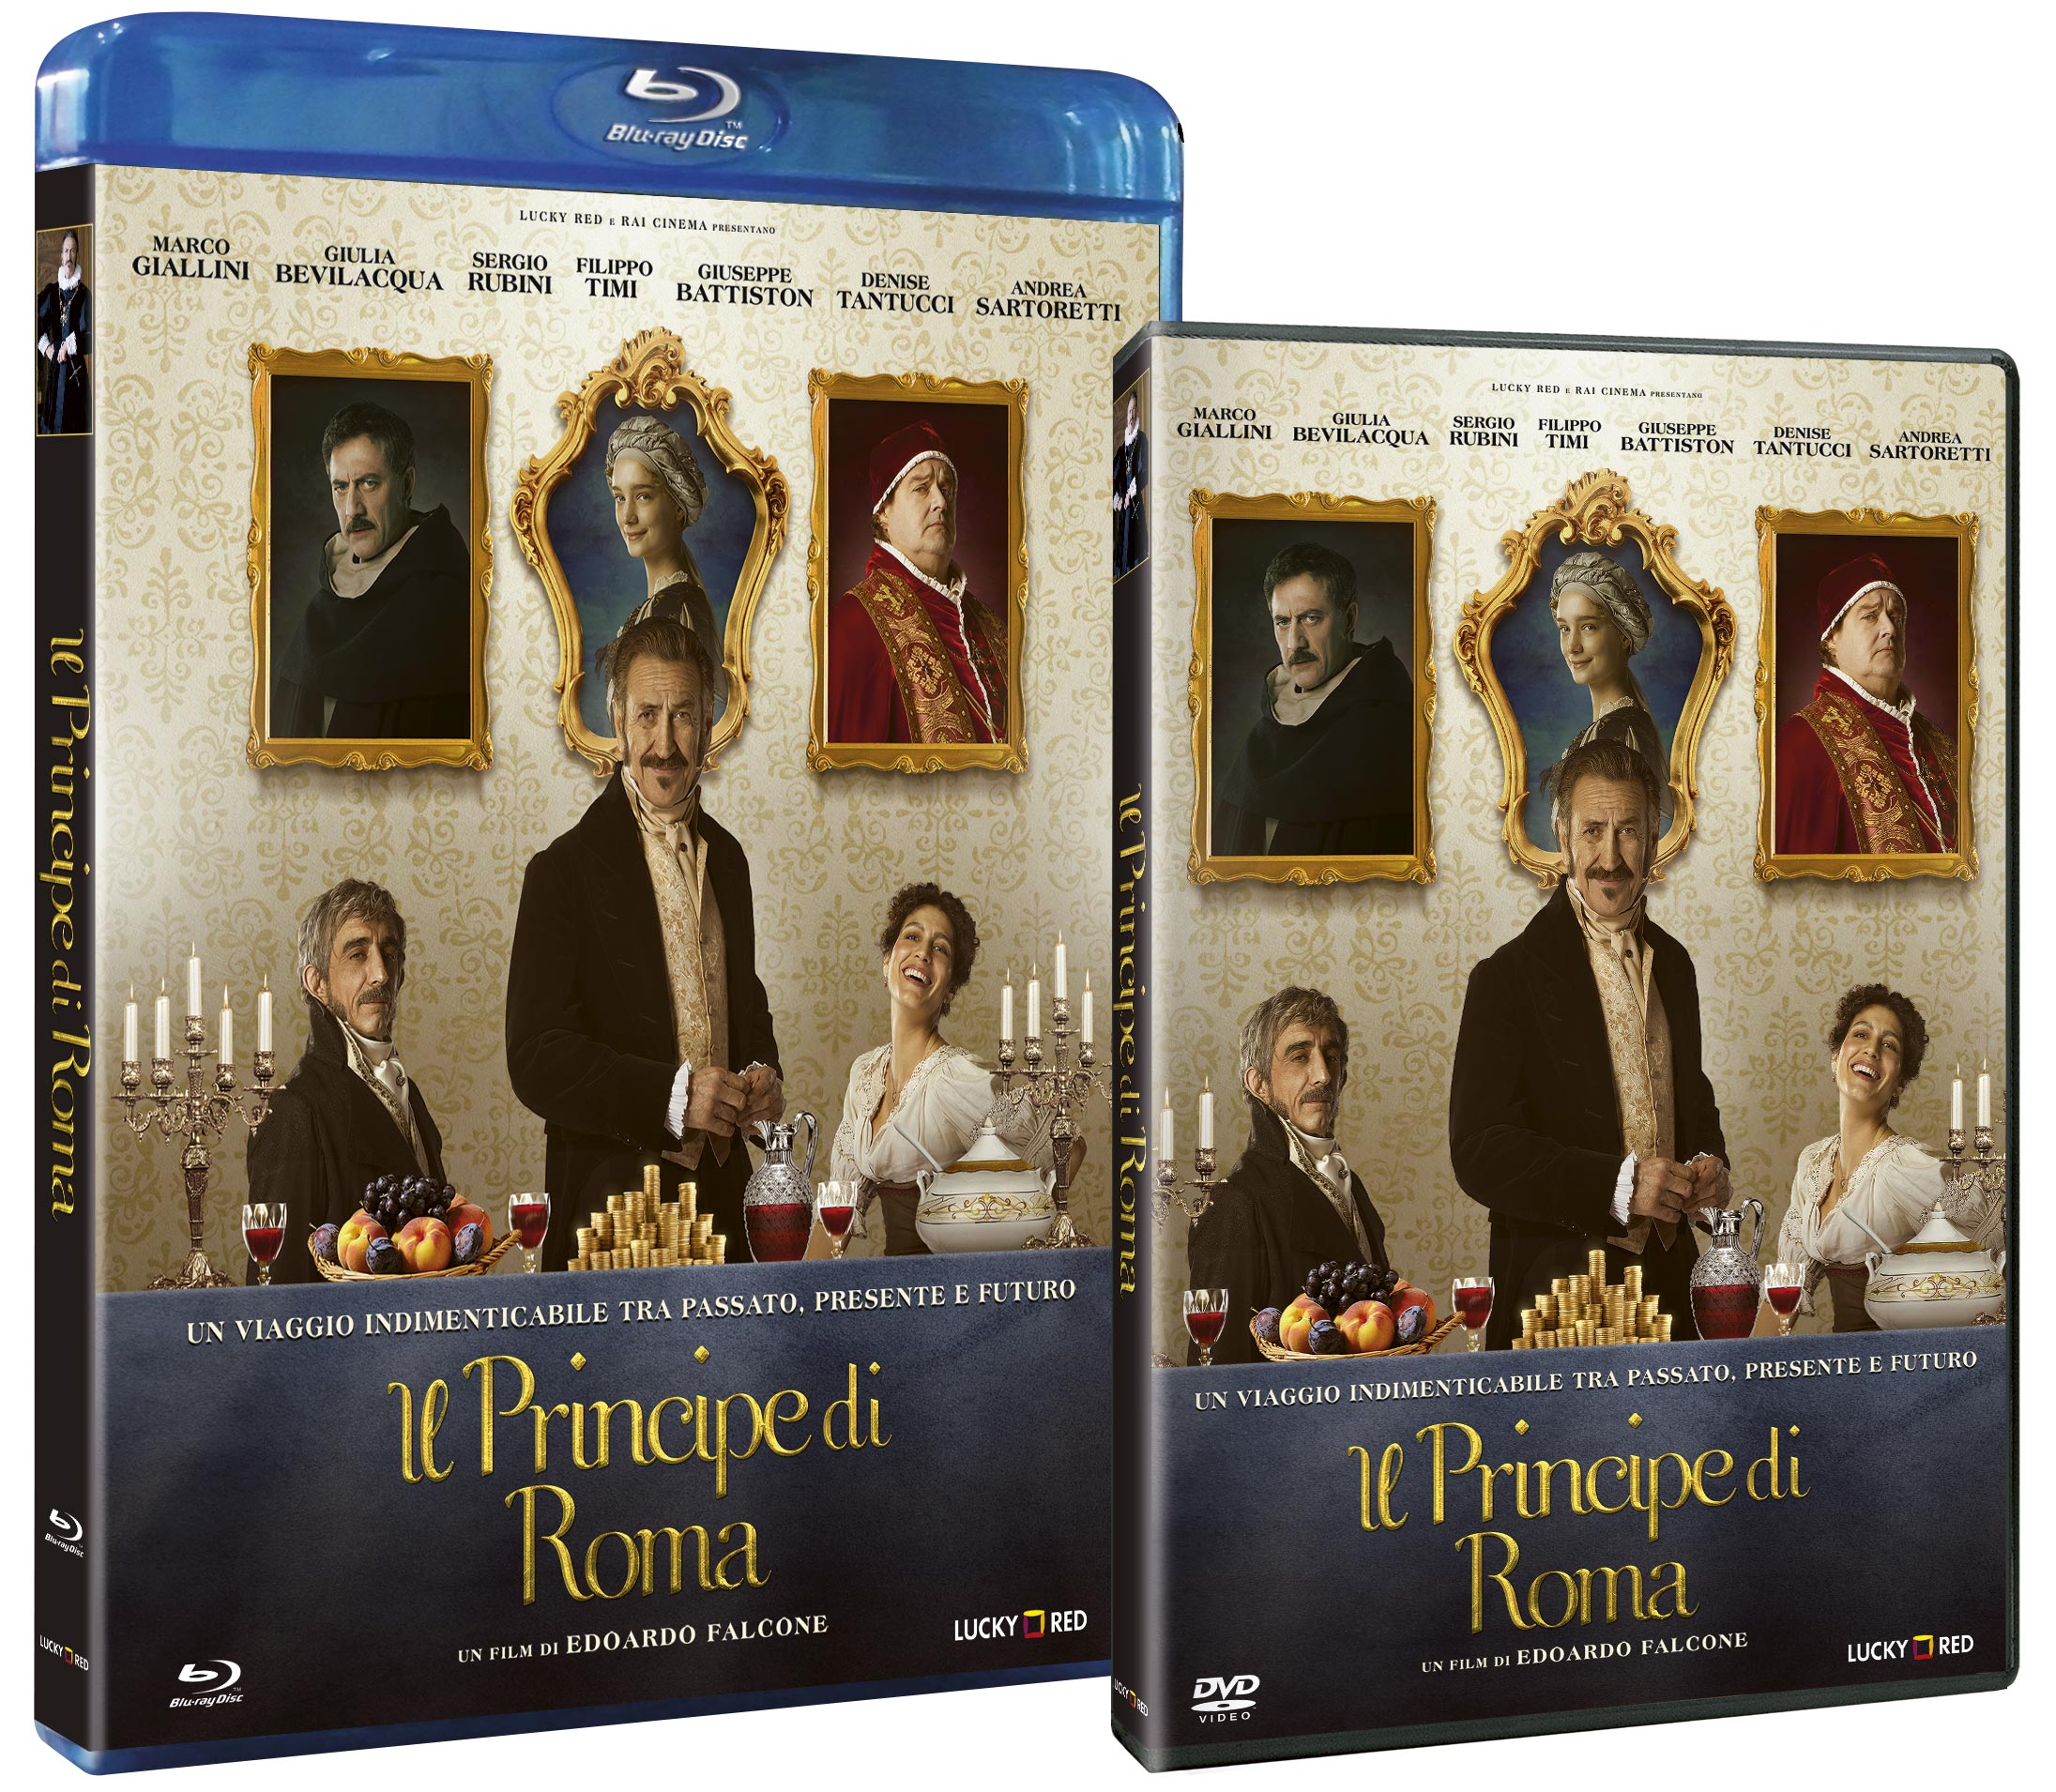 Il Principe di Roma in DVD e Blu-ray